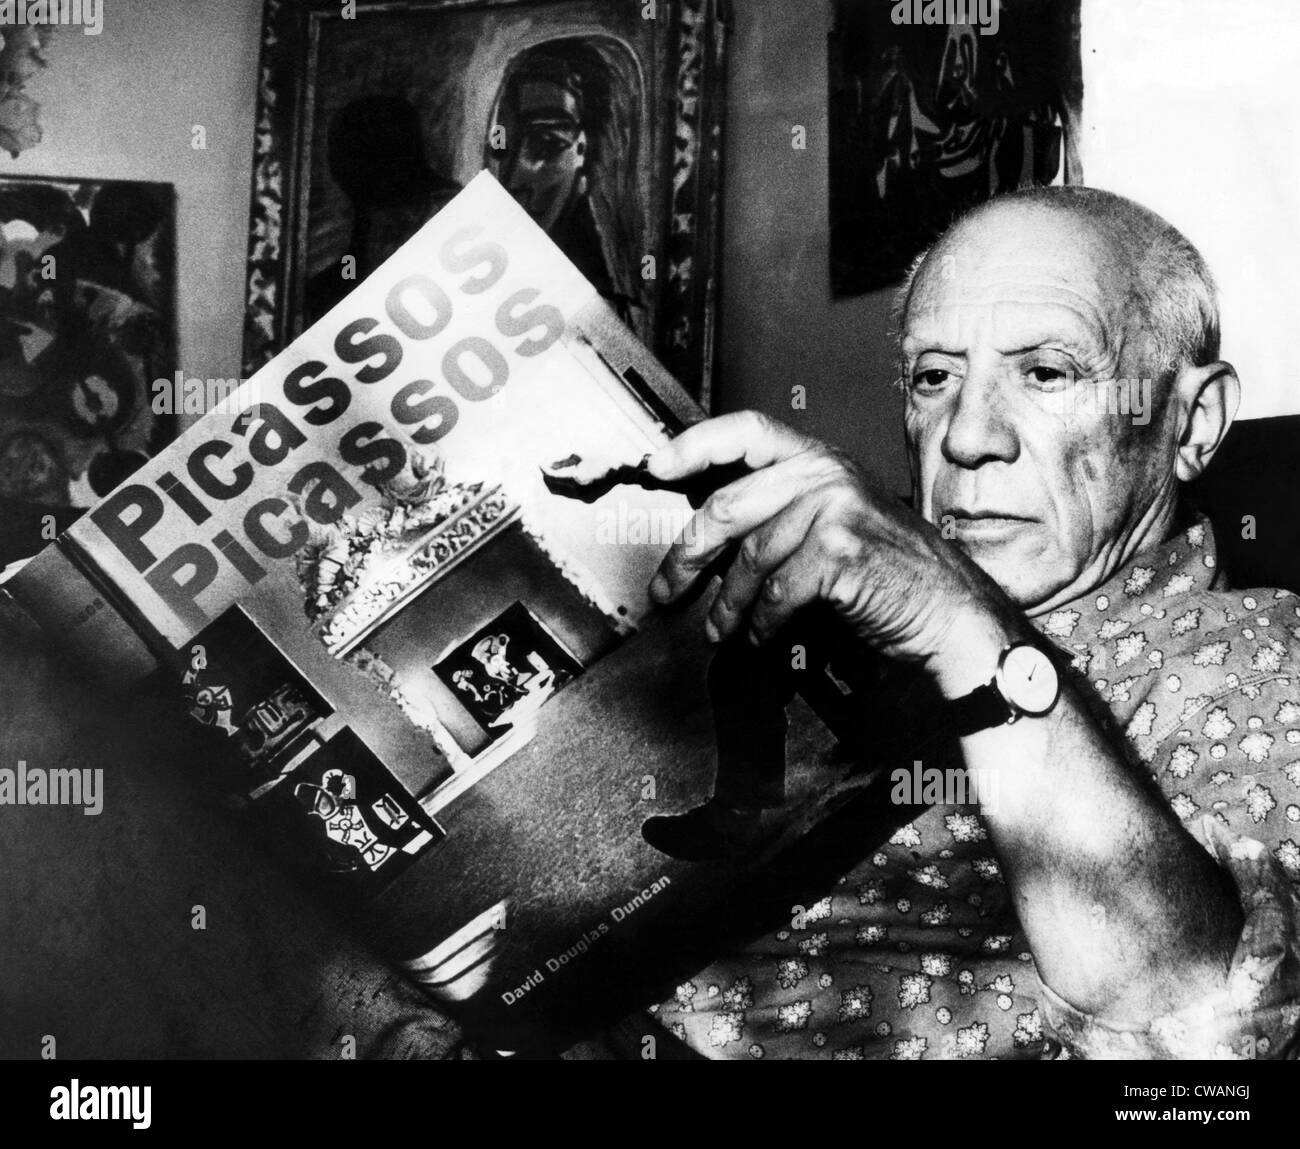 Artista Pablo Picasso legge fom il suo libro nella sua casa sulla Riviera Francese. 10/19/60. La cortesia: Archivi CSU/Everett collezione. Foto Stock